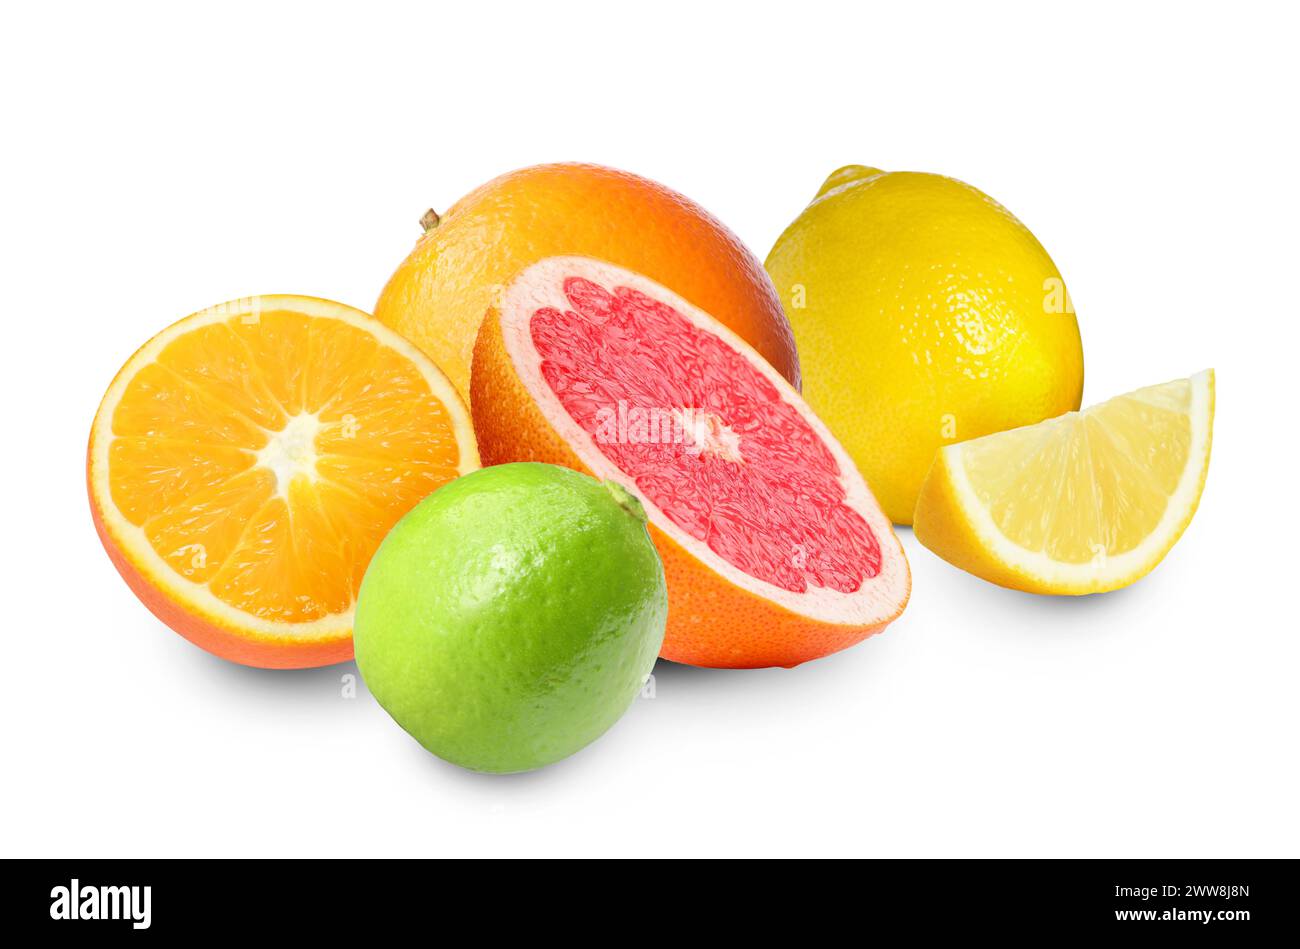 Citrus fruits. Fresh oranges, grapefruit, lemons and lime on white background Stock Photo